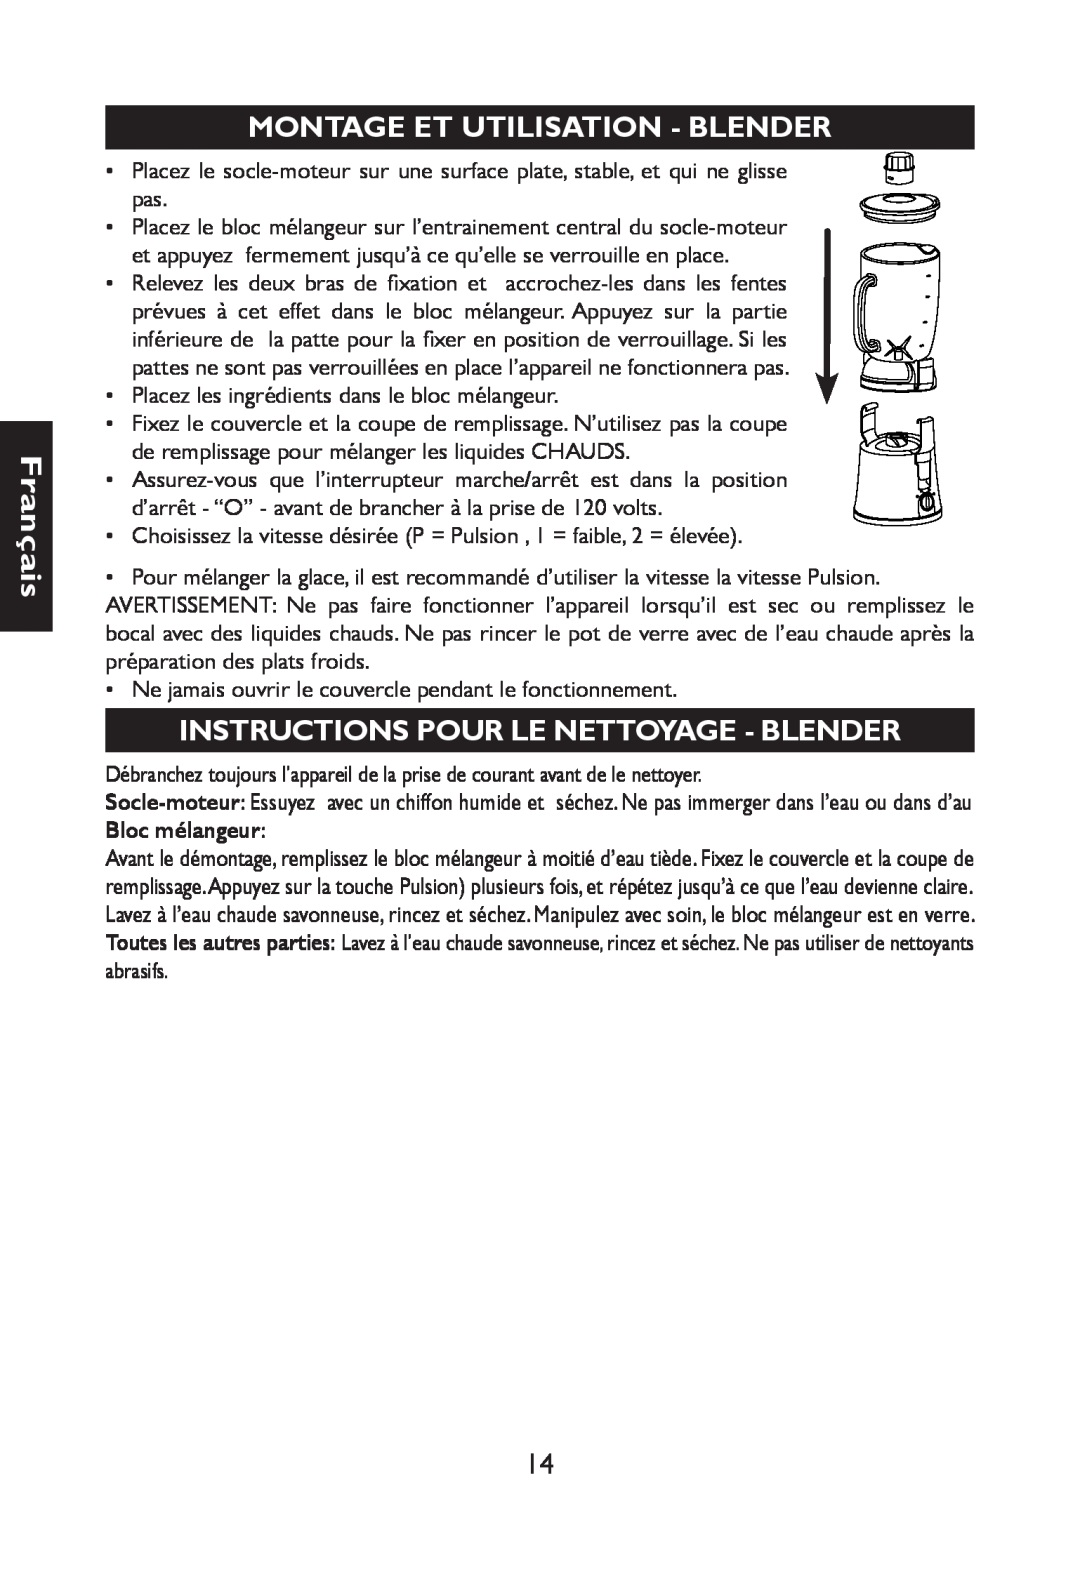 Nesco JB-50 manual Montage Et Utilisation - Blender, Instructions Pour Le Nettoyage - Blender, Français, Bloc mélangeur 